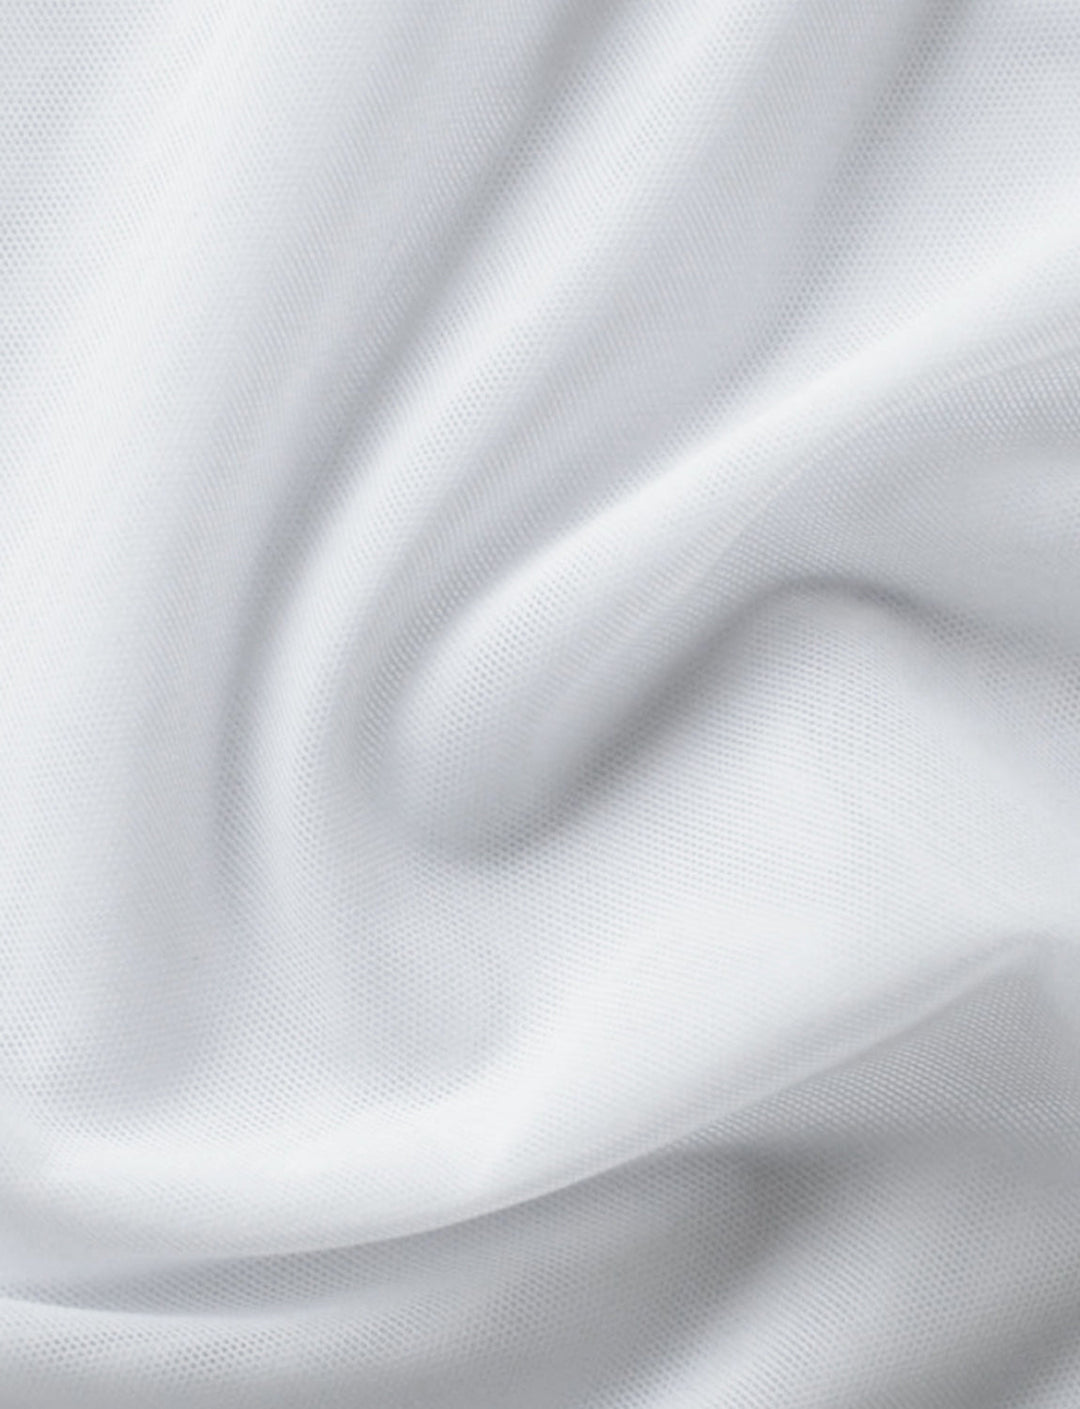 white mesh fabric swatch